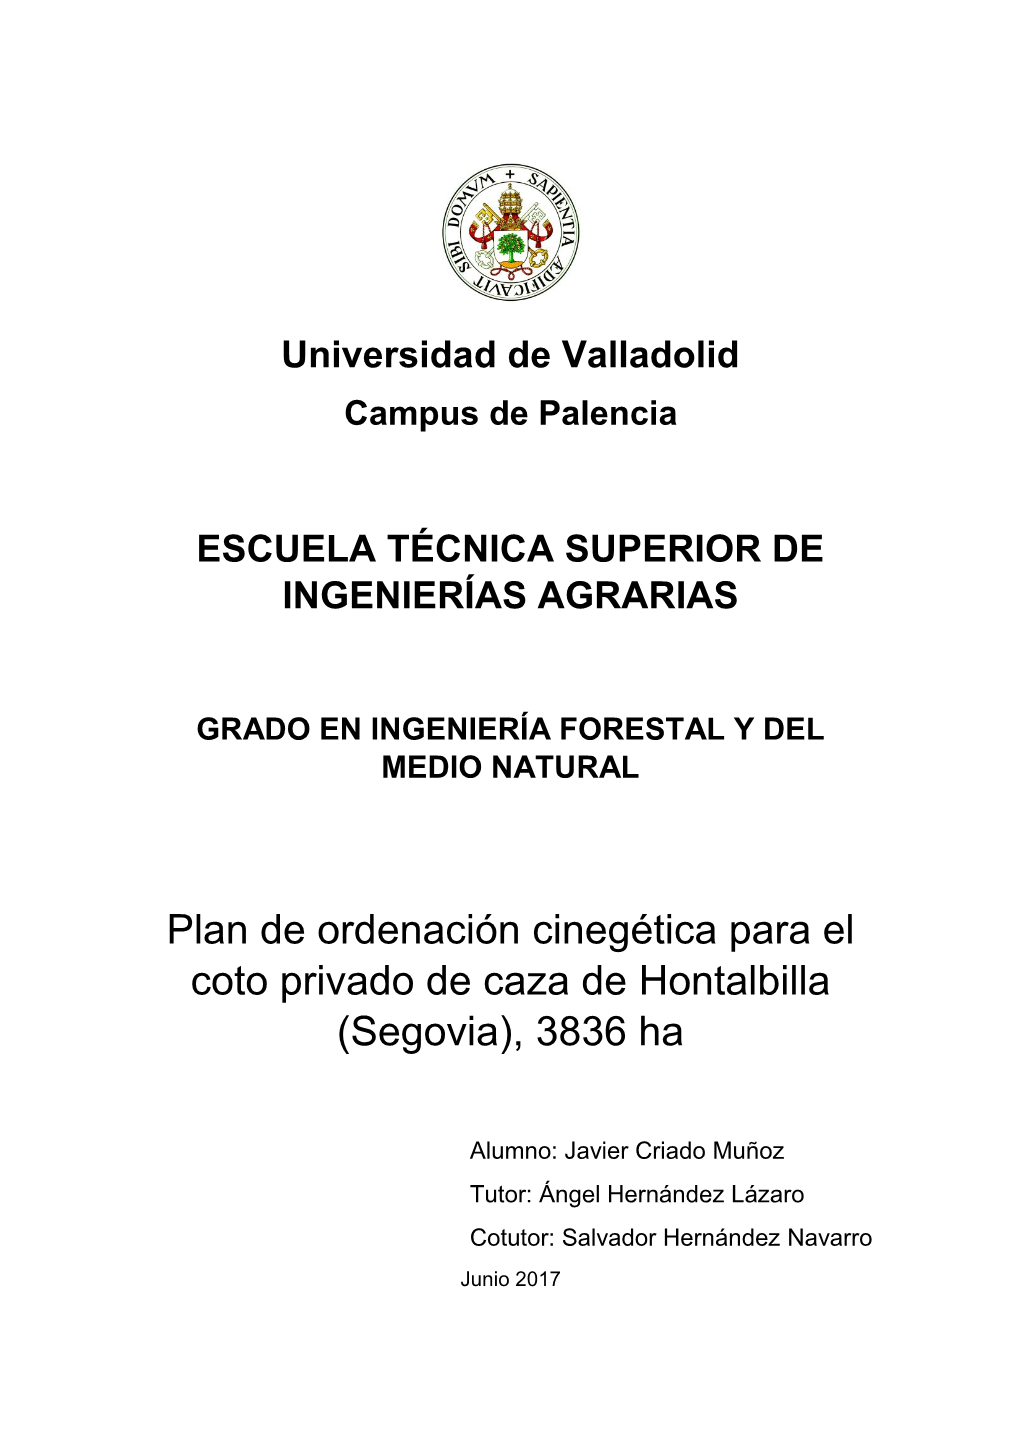 Plan De Ordenación Cinegética Para El Coto Privado De Caza De Hontalbilla (Segovia), 3836 Ha